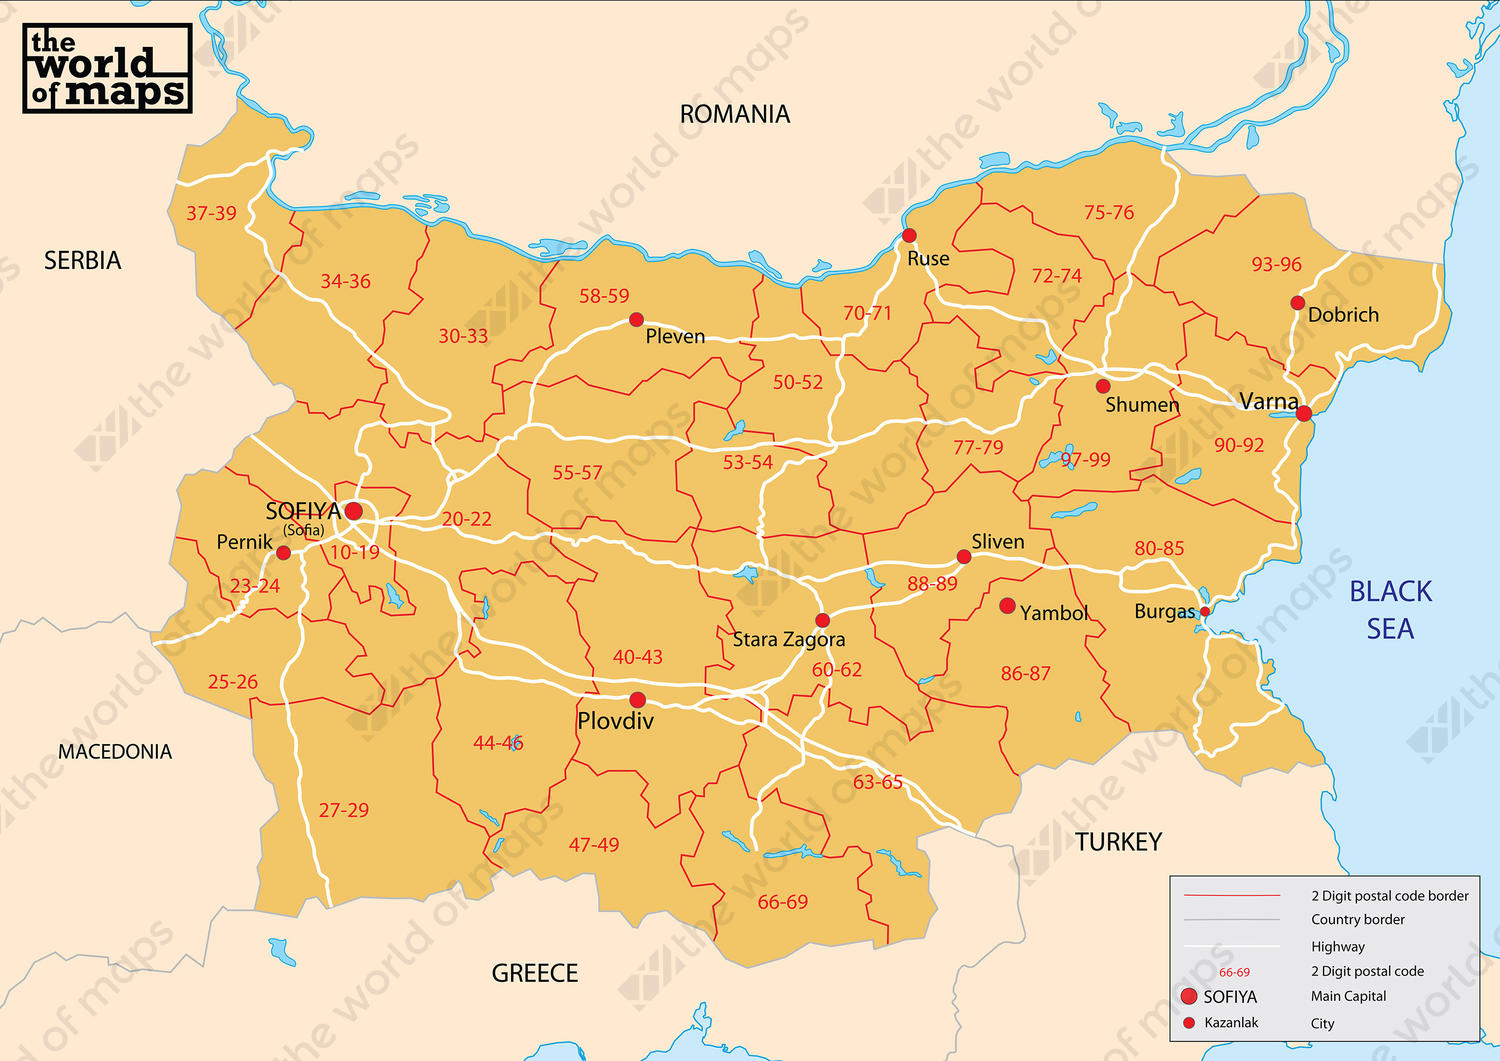 Digital postcode map Bulgaria 2-digit